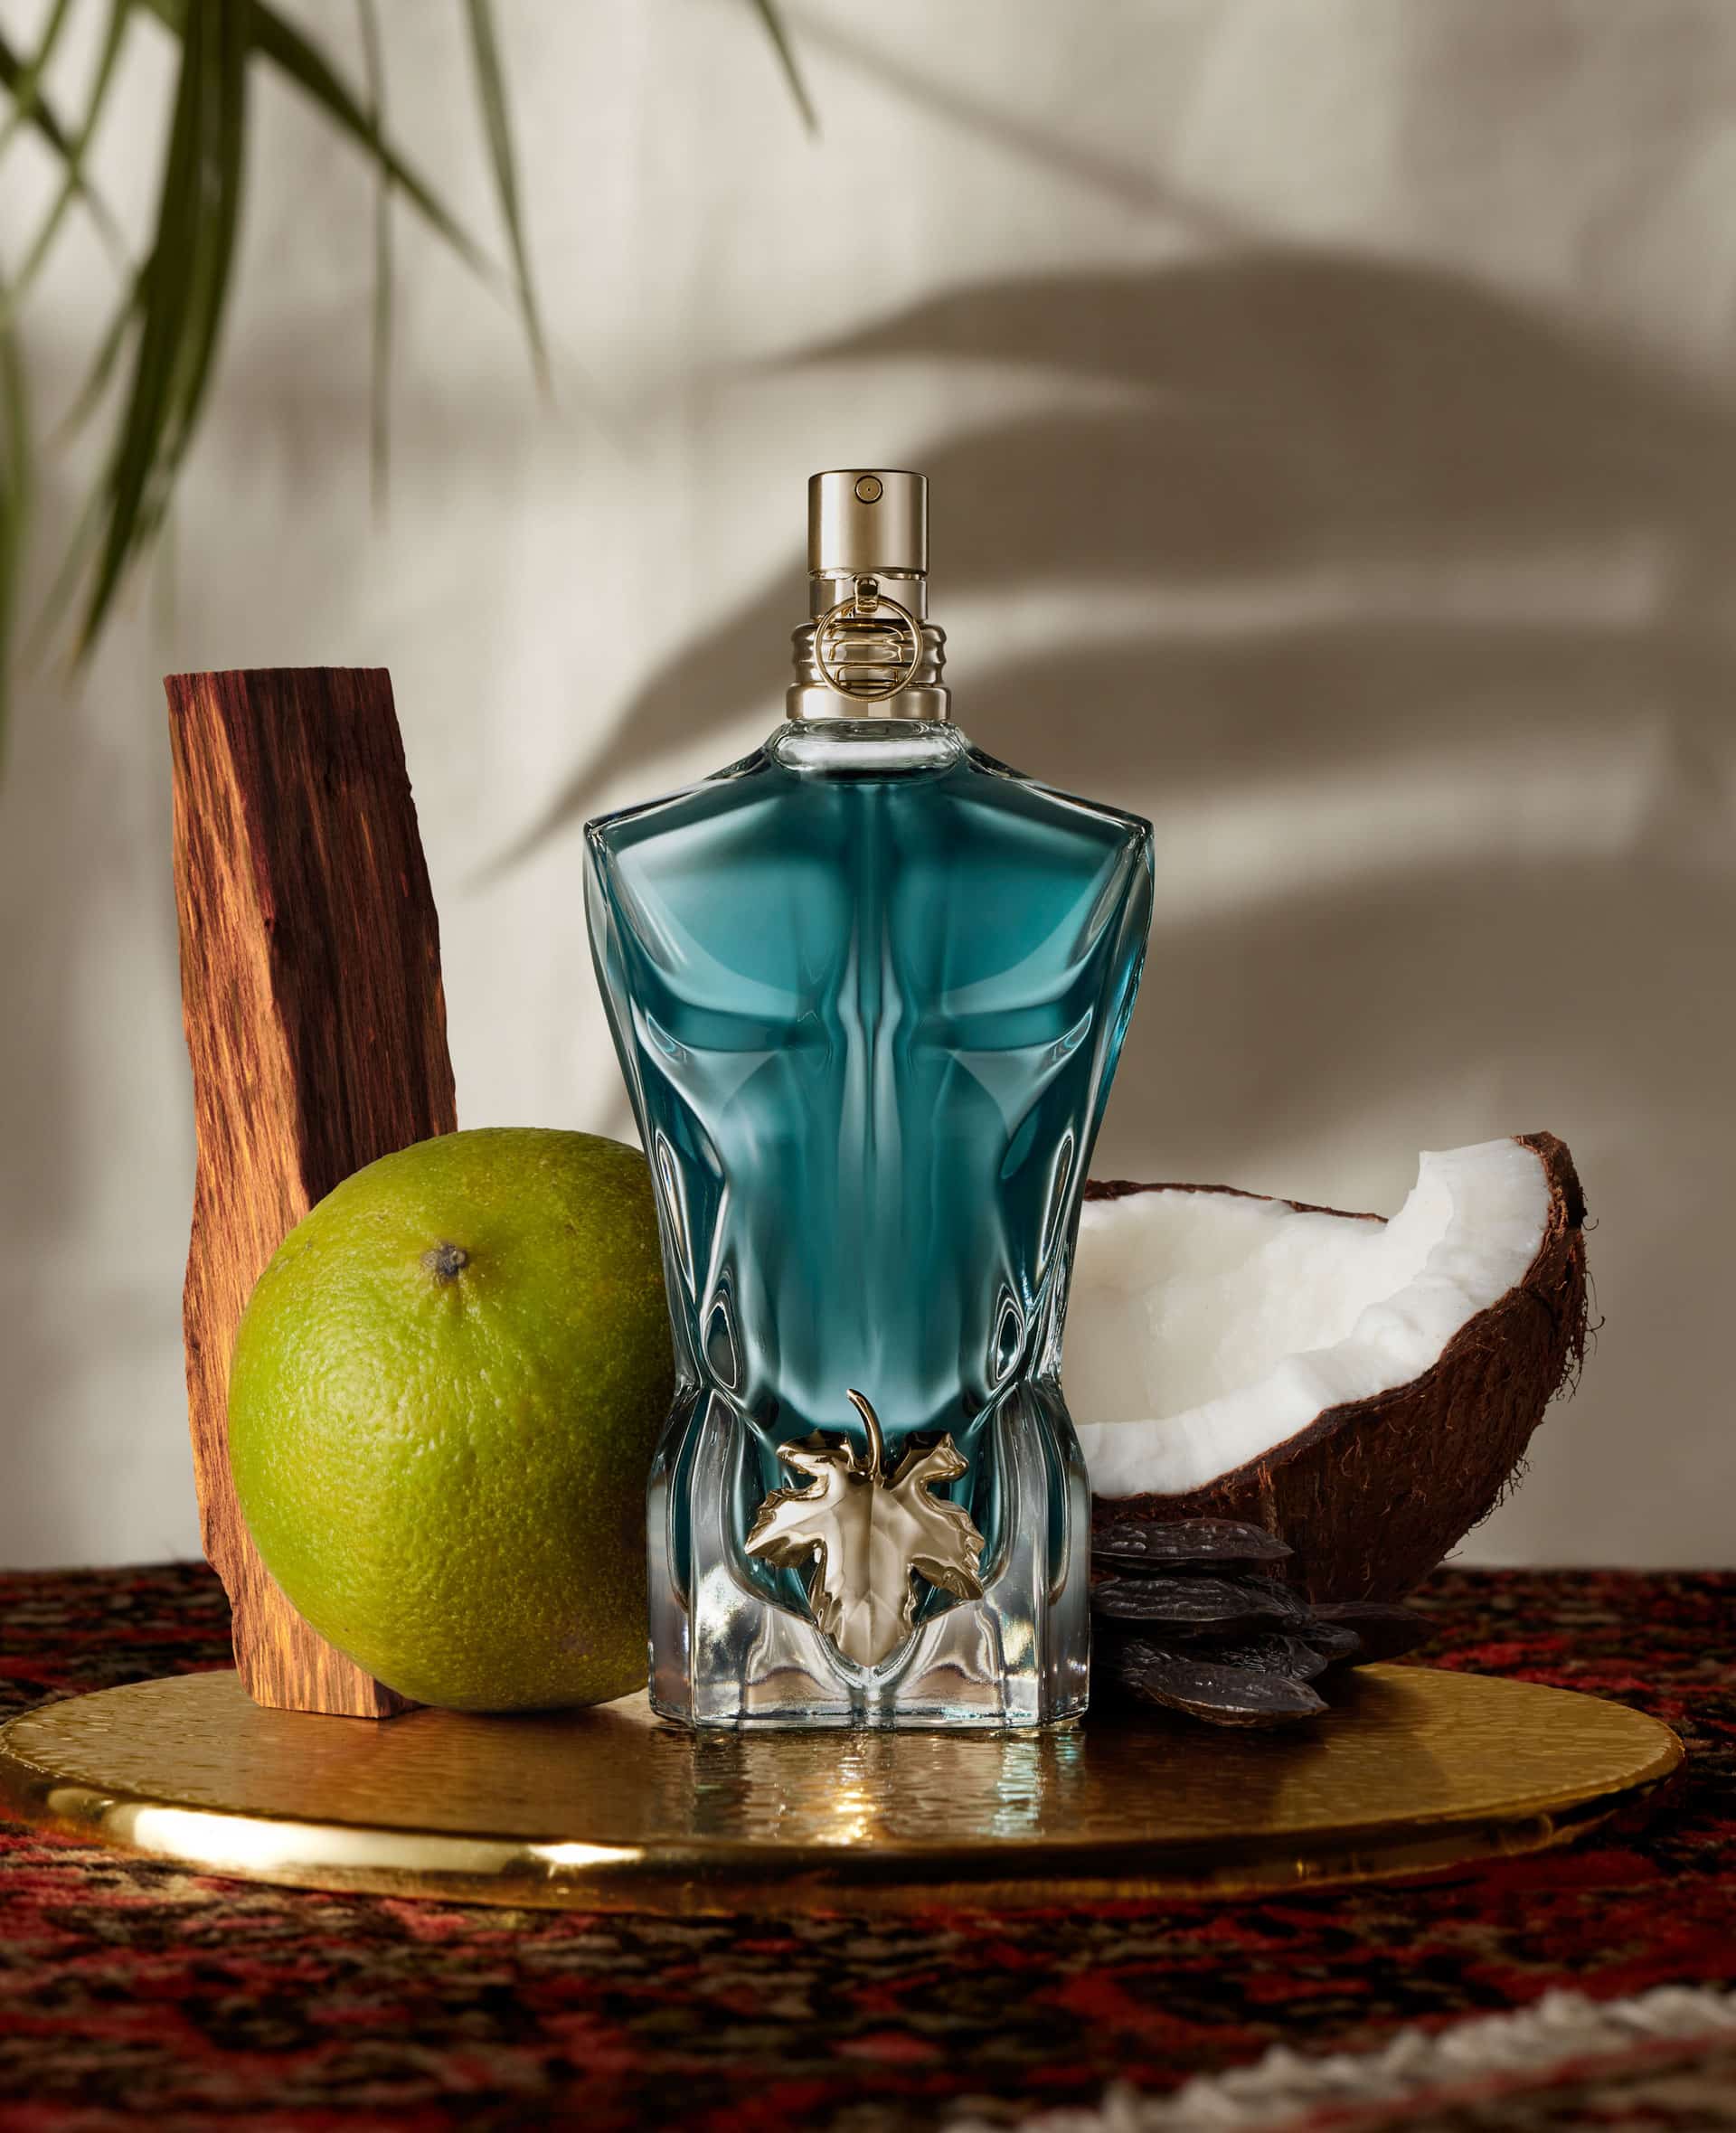 Le Beau » Jean Paul Gaultier » The Parfumerie » Sri Lanka